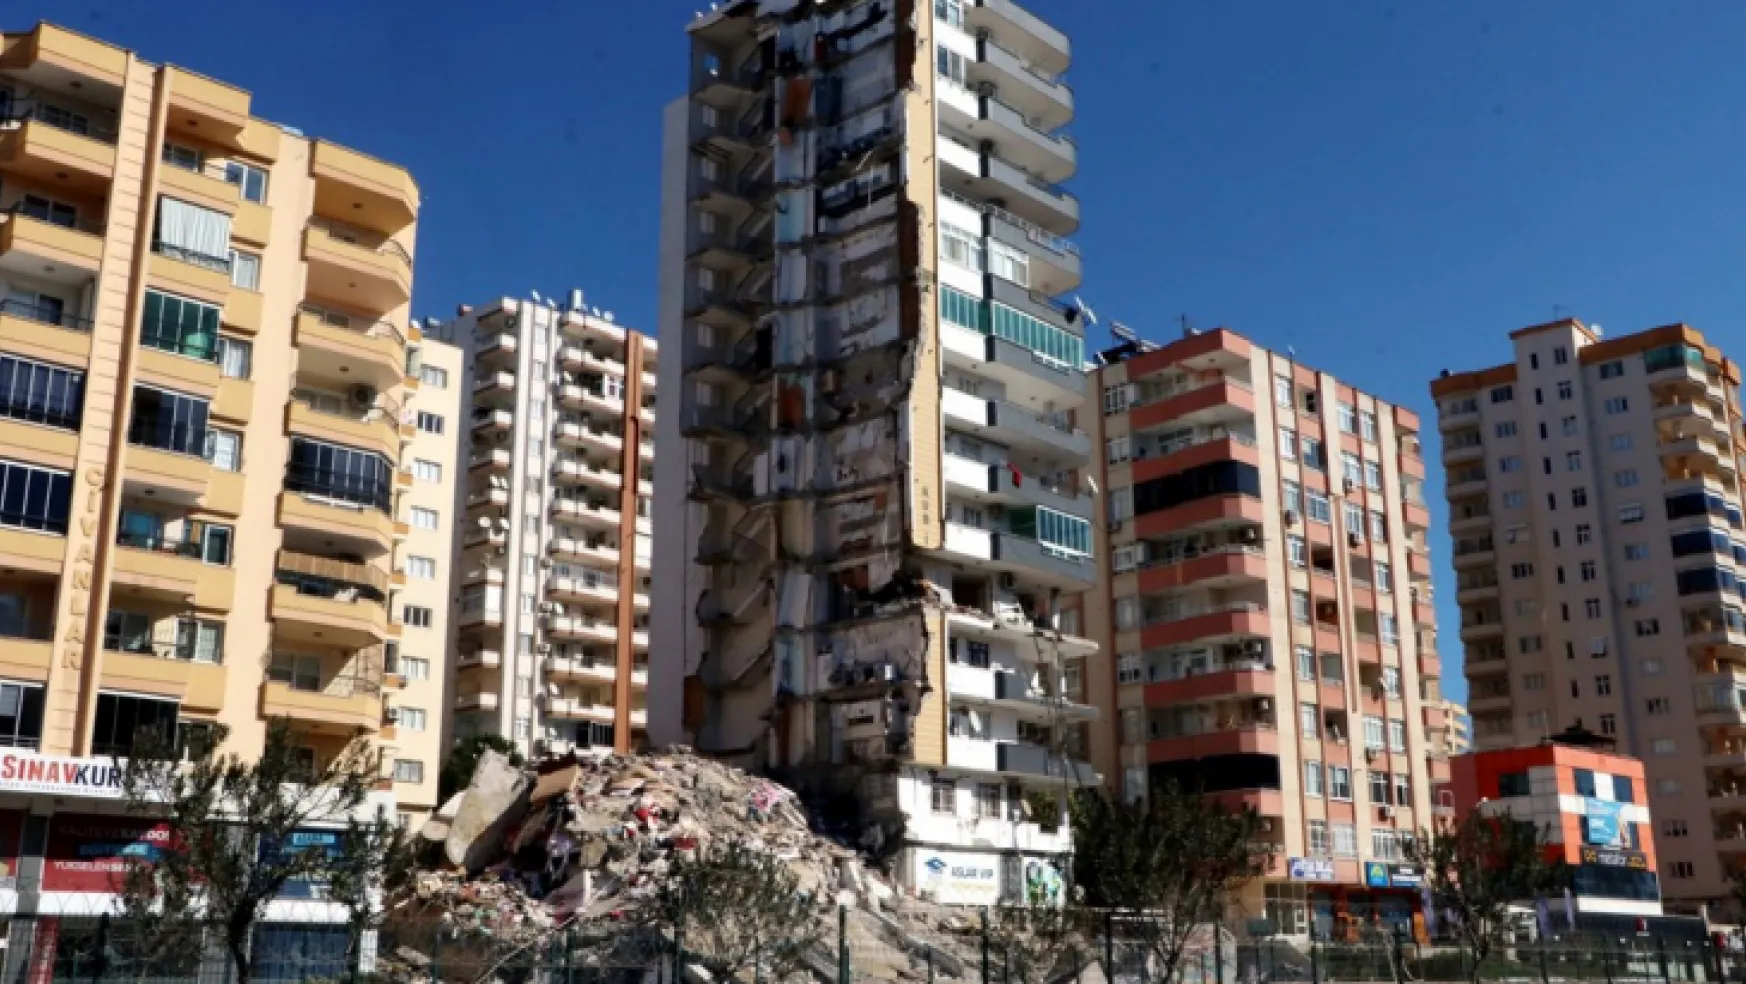 Adana'da 3 bin 821 bina yıkılacak